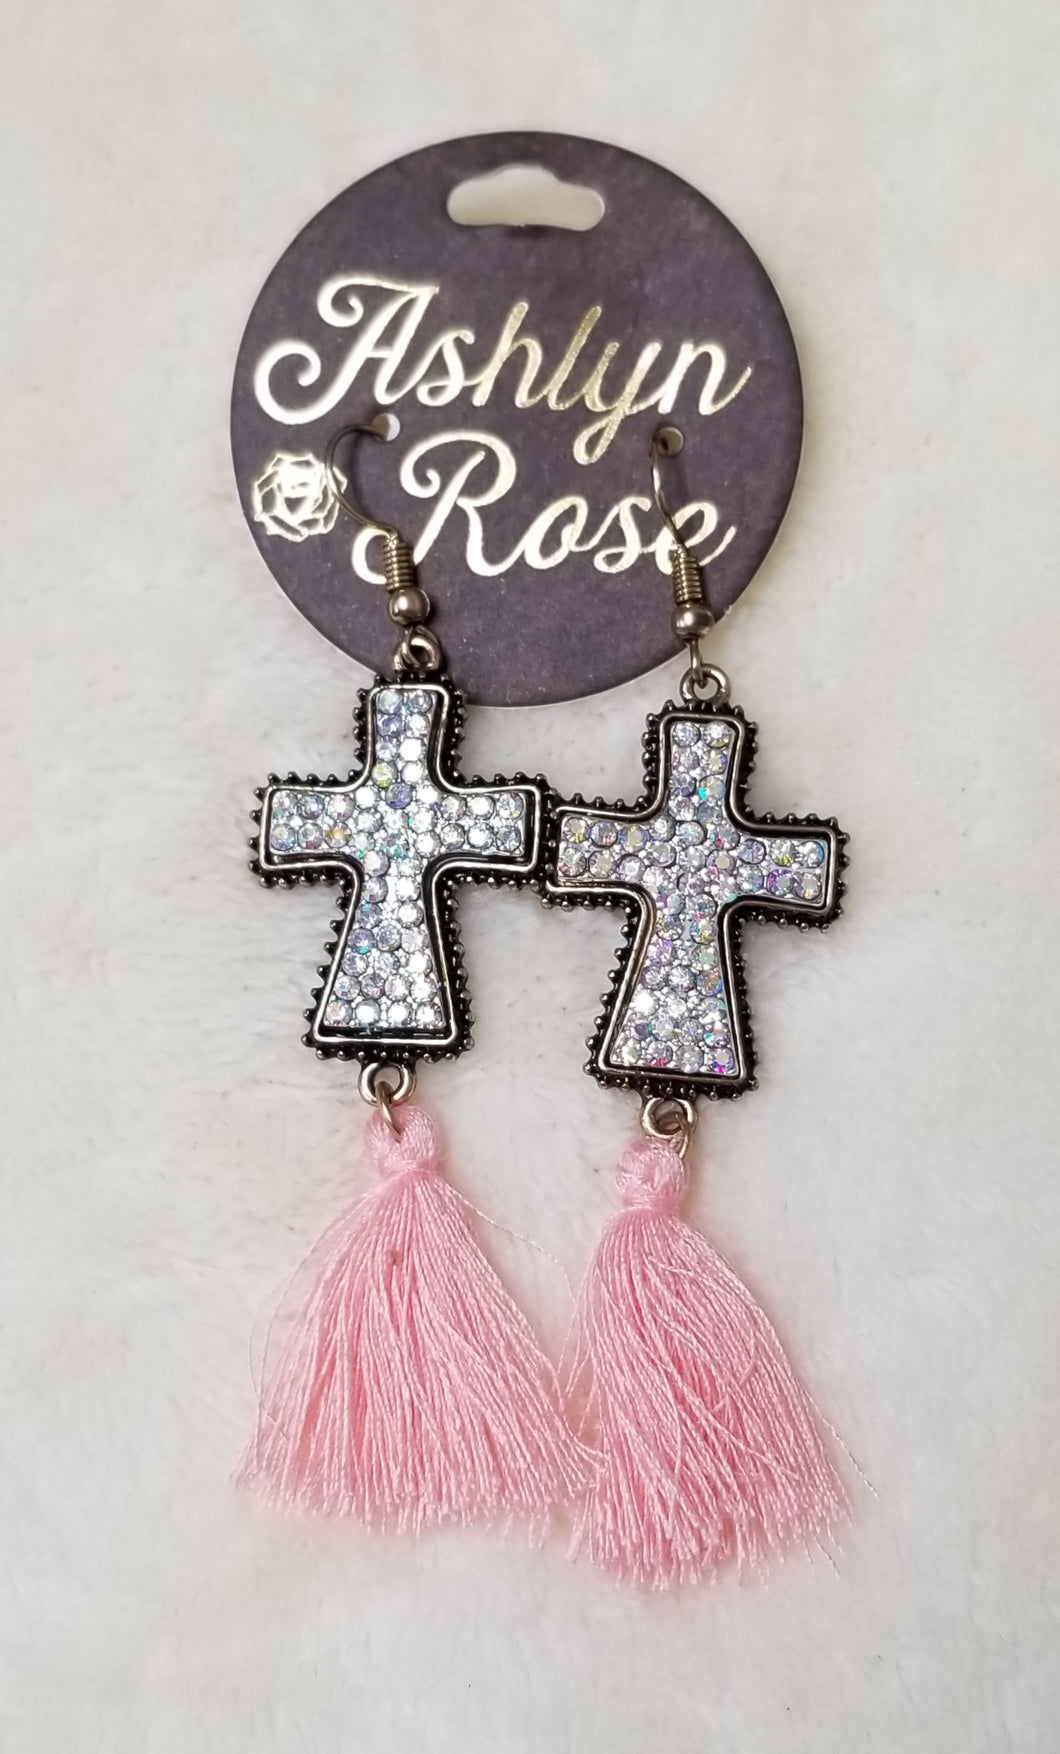 Cross earings with pink tassels